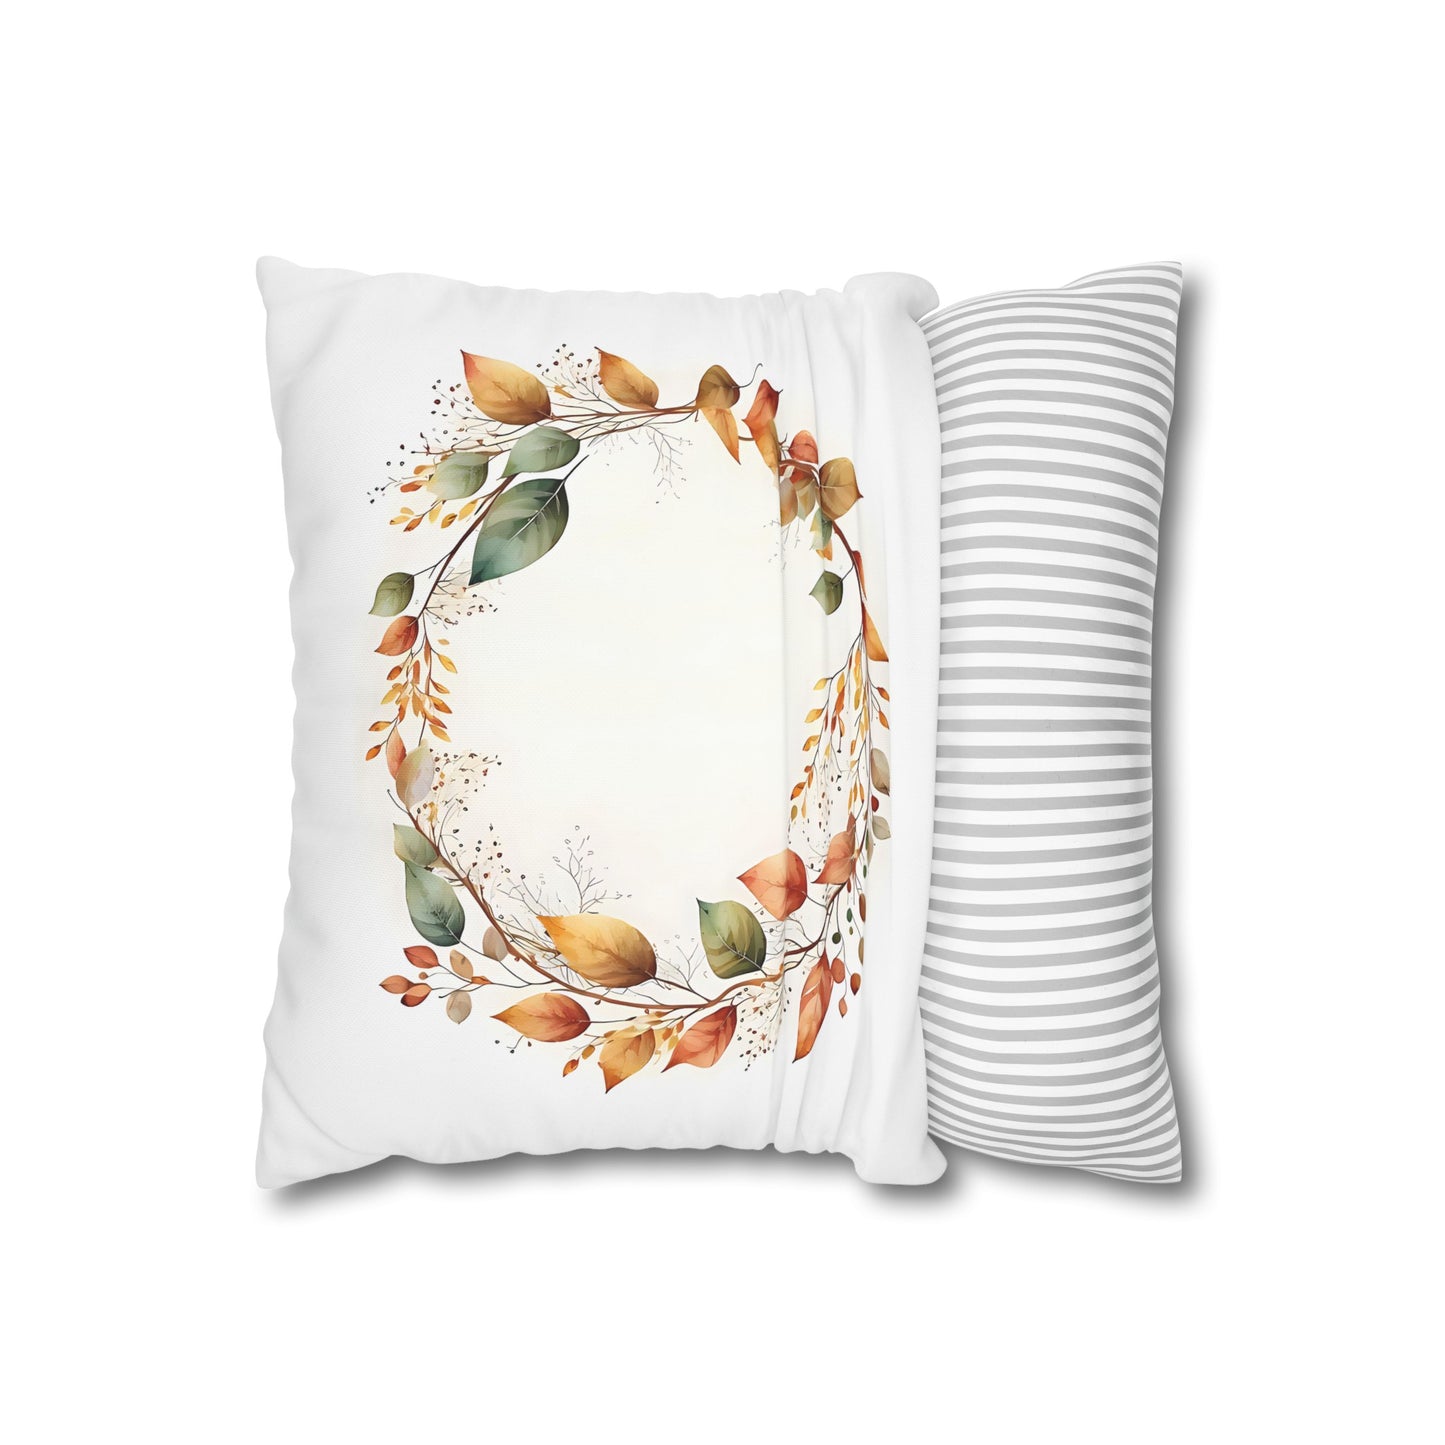 Autumn Wreath #1 Cushion Cover